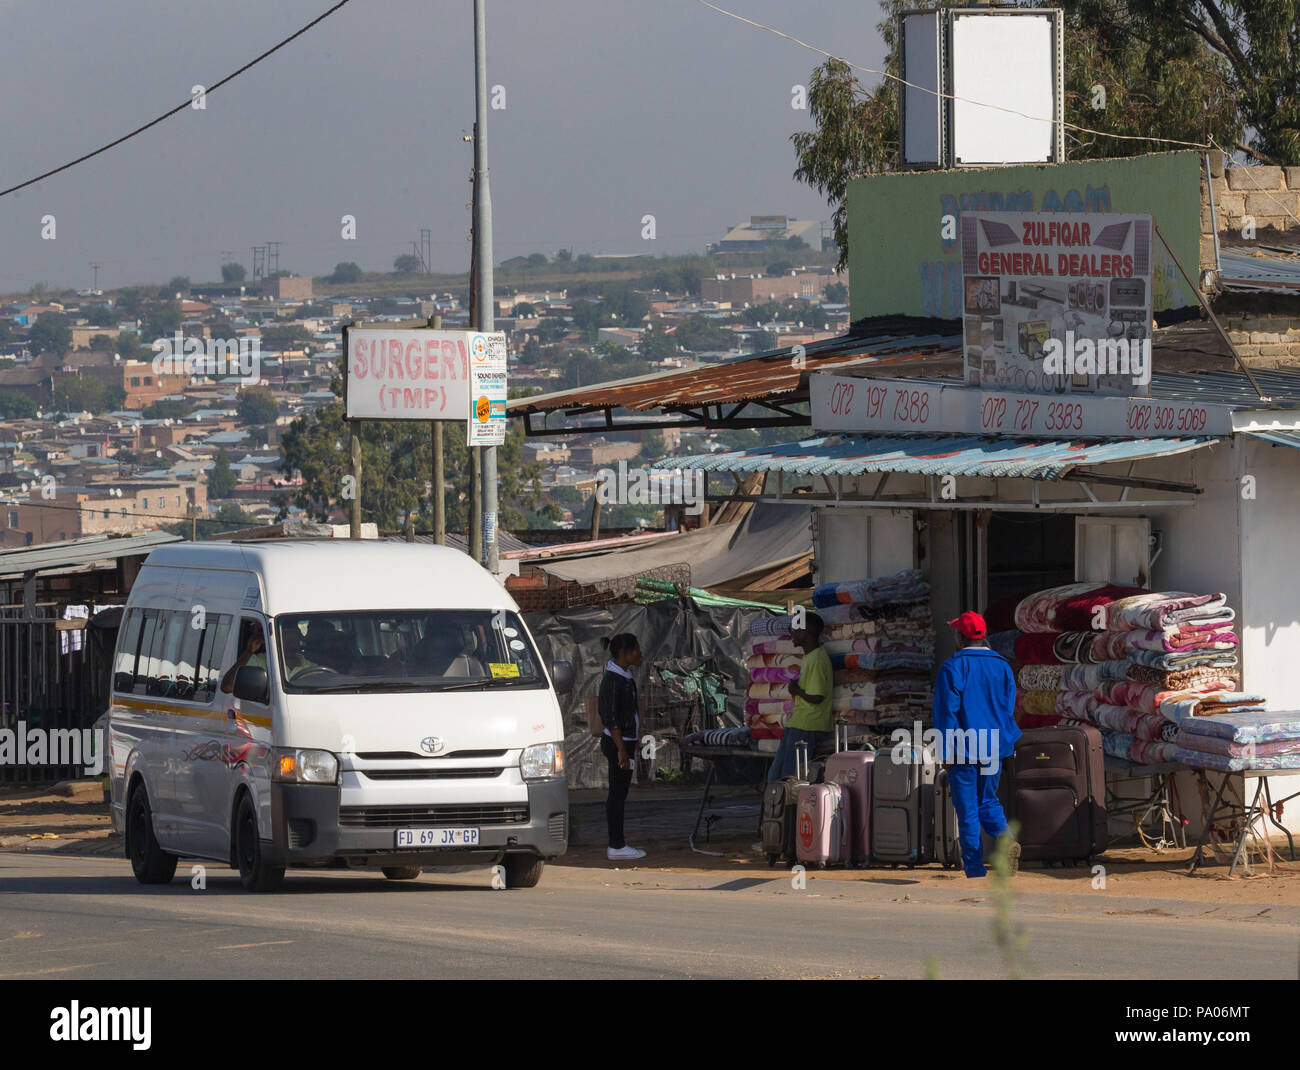 Allgemein Fachhändler für kleine Unternehmen, Einzelhändler in Afrika, mit schwarzen Taxi in Gemeinde Diepsloot nördlich von Johannesburg in Südafrika mit den Leuten auf der Straße Stockfoto